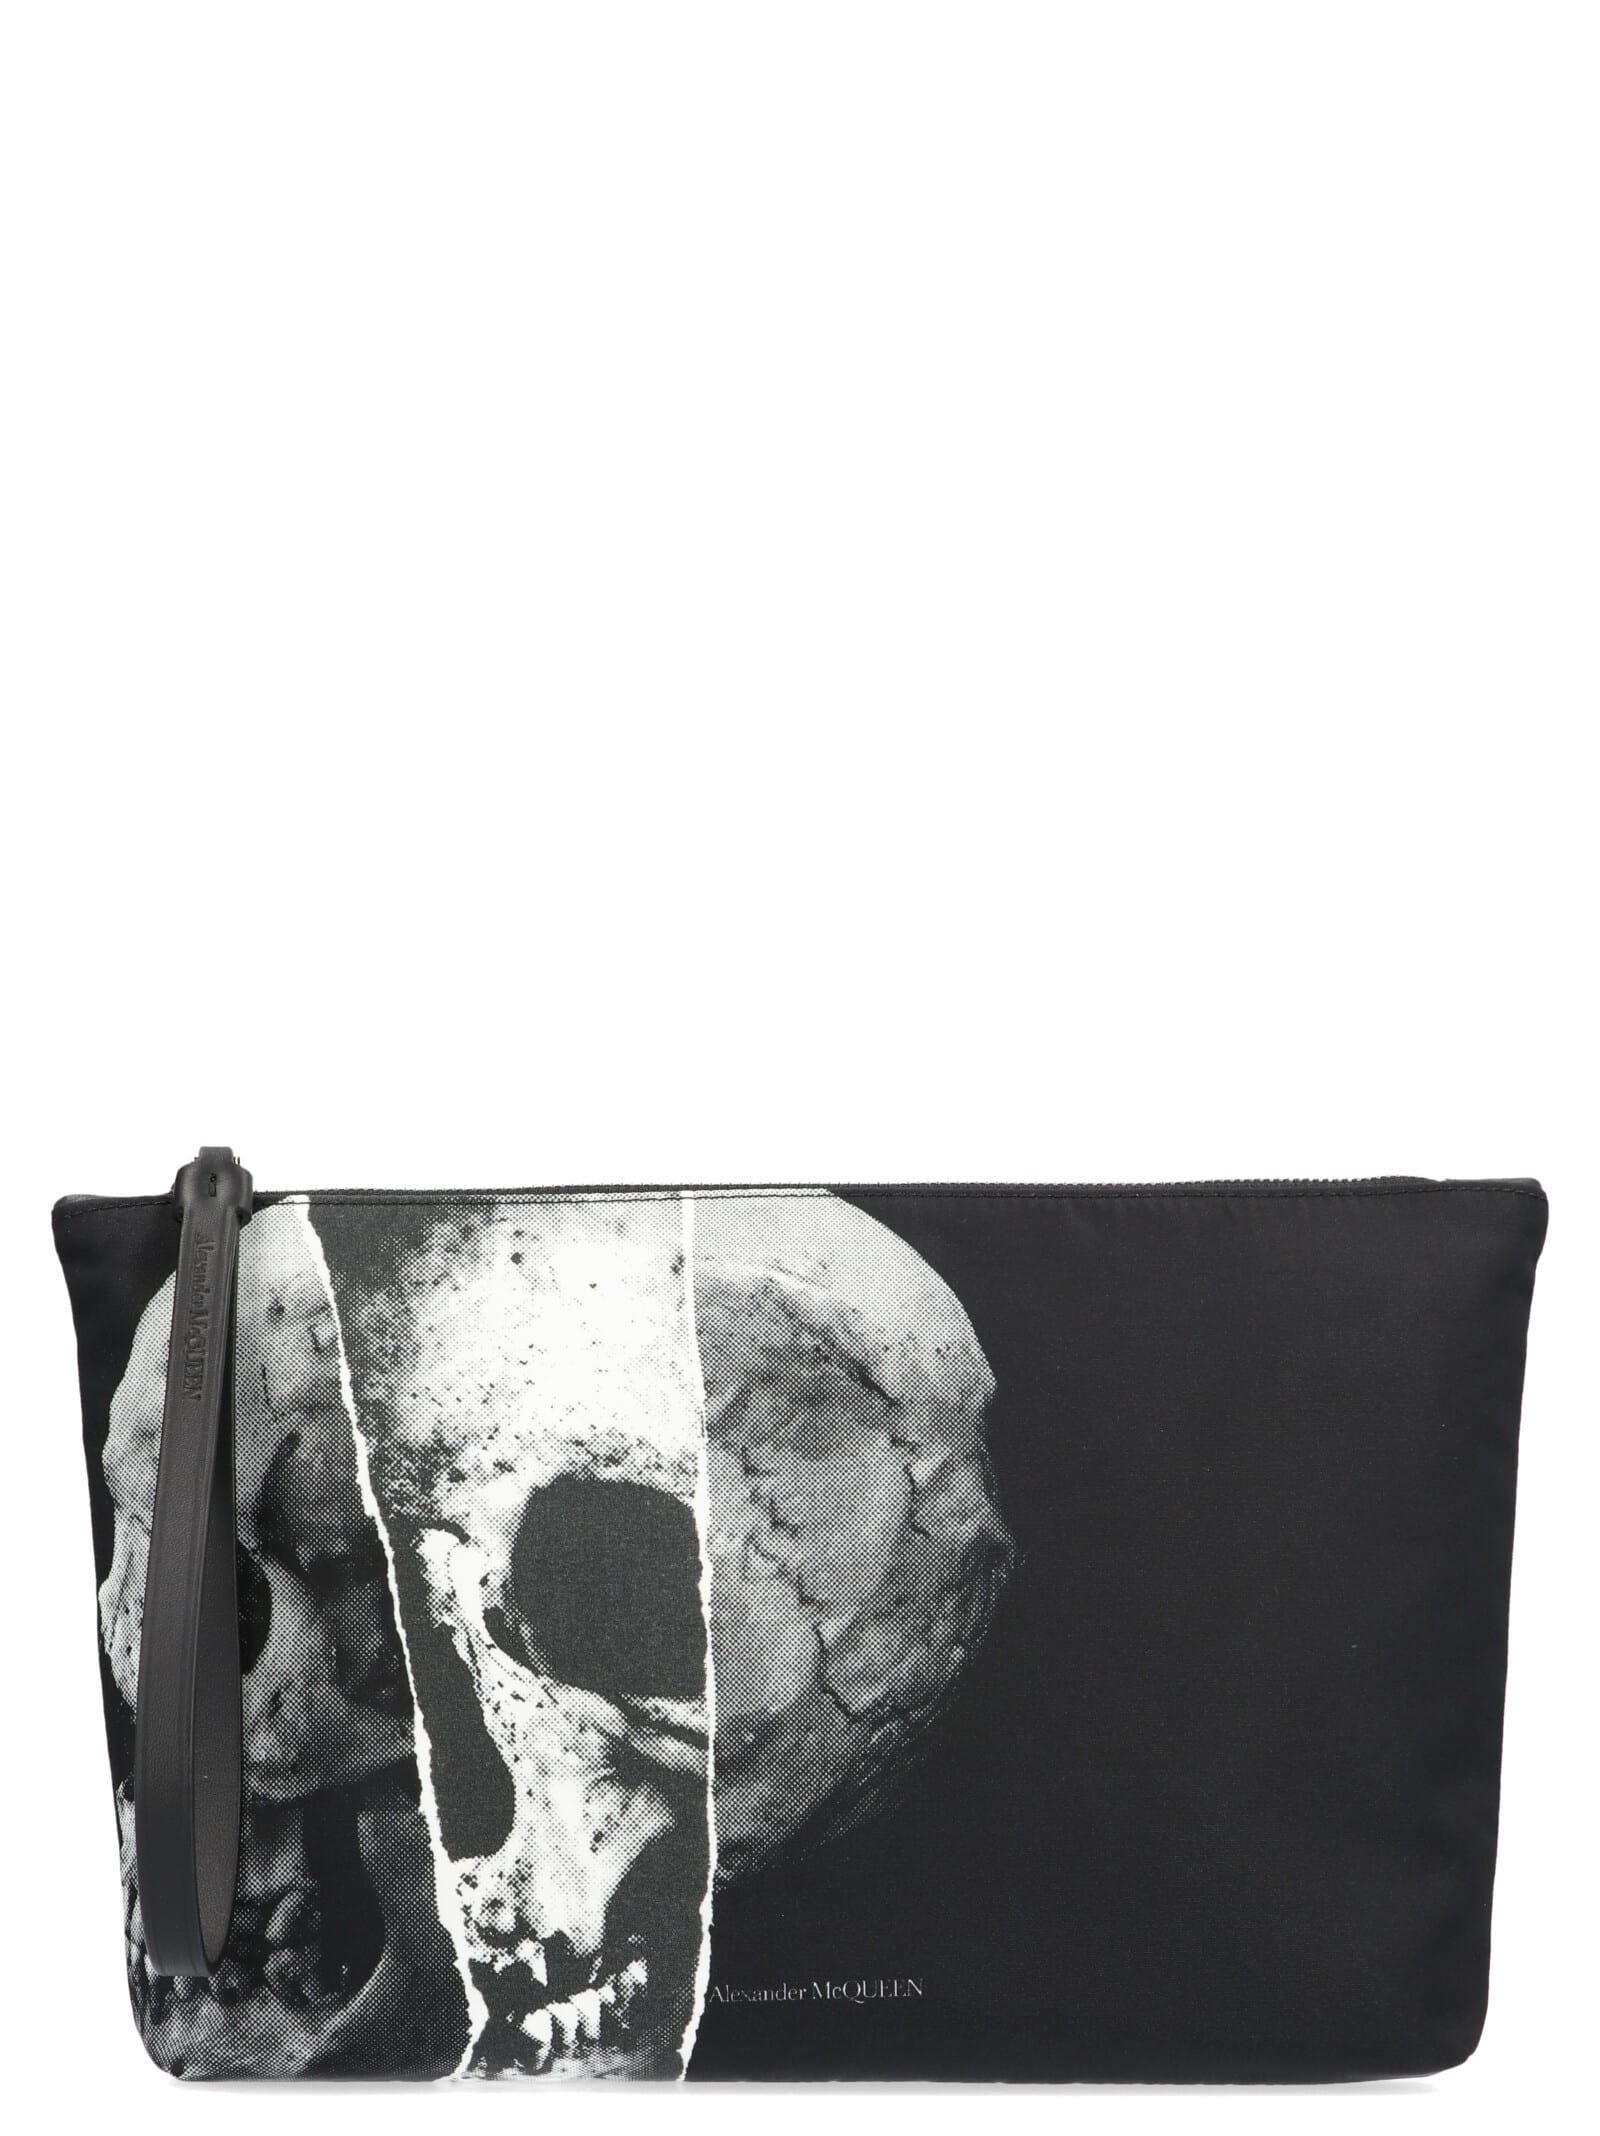 alexander mcqueen skull handbag